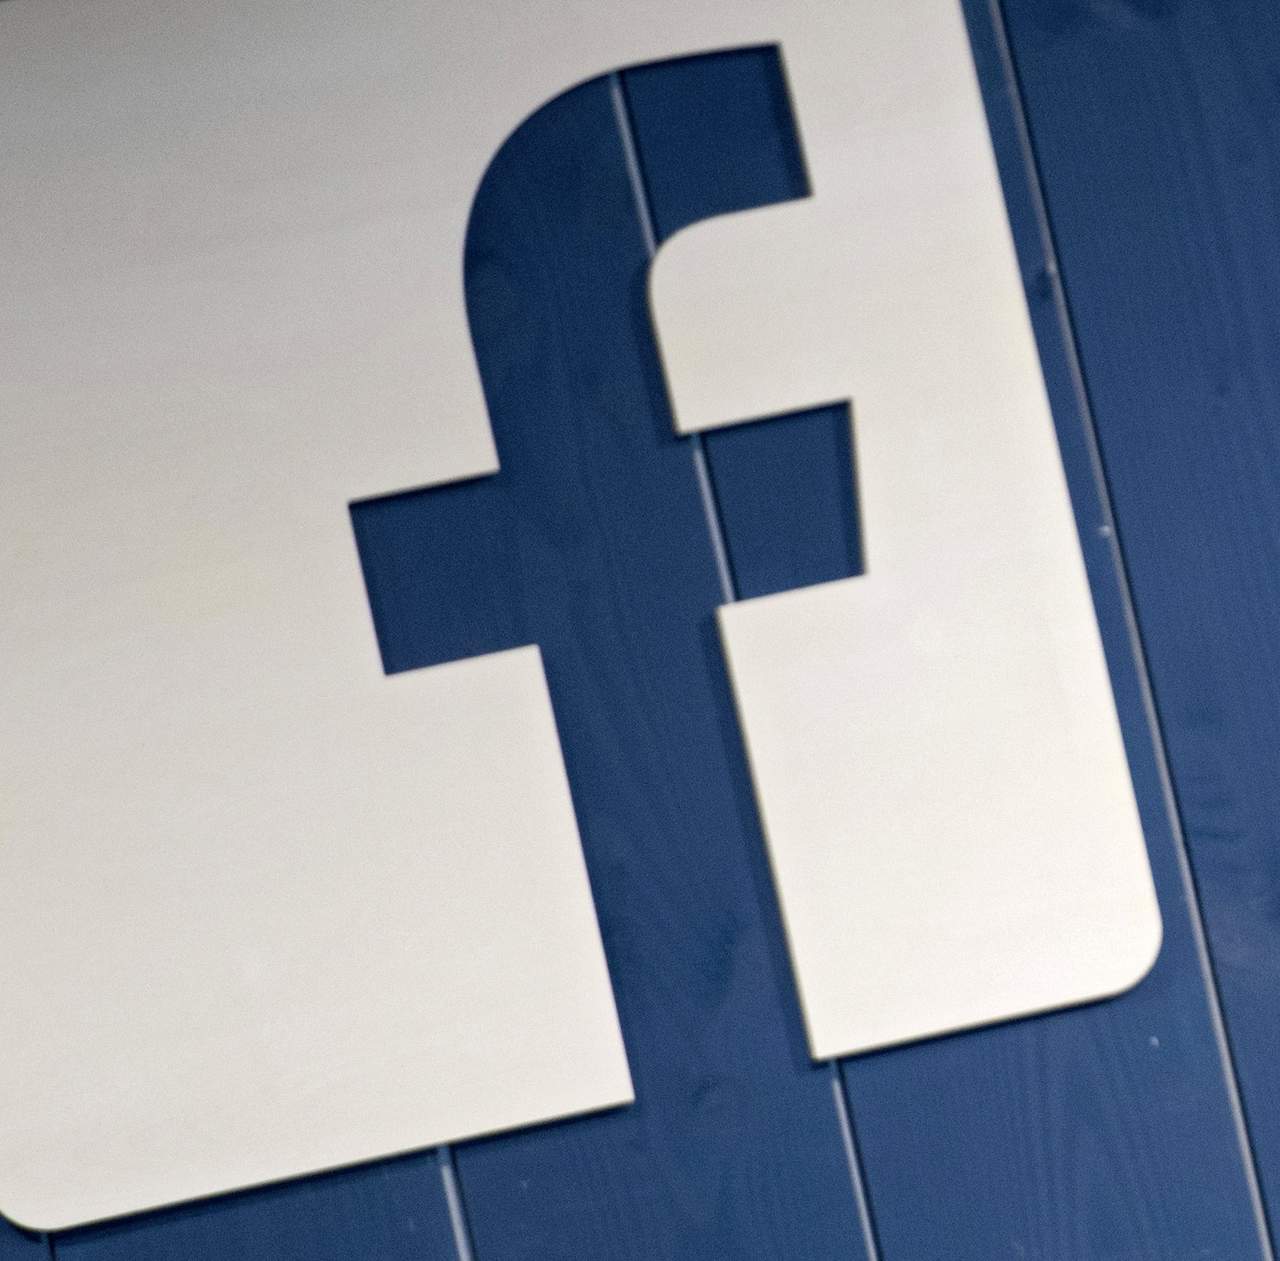 Facebook propone empoderar a padres para cuidar a los niños en Internet